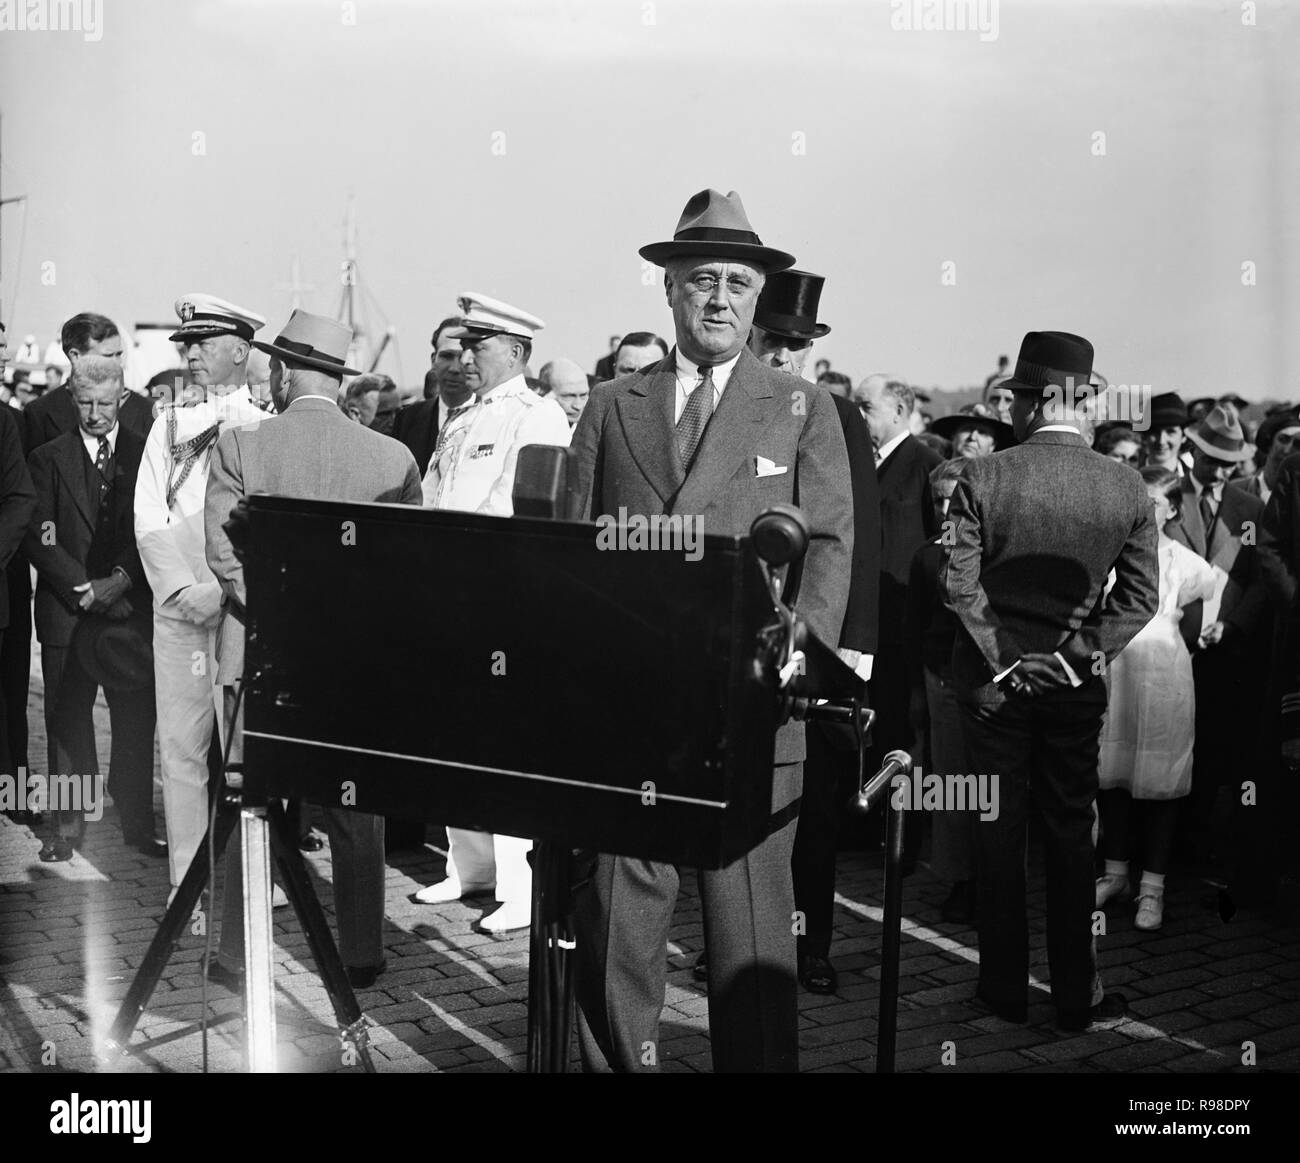 Us-Präsident Franklin Roosevelt Warten auf die Ankunft der Explorer Admiral Richard E. Byrd nach seiner Rückkehr von einer Expedition in die Antarktis, Washington DC, USA, Harris & Ewing, 10. Mai 1935 Stockfoto